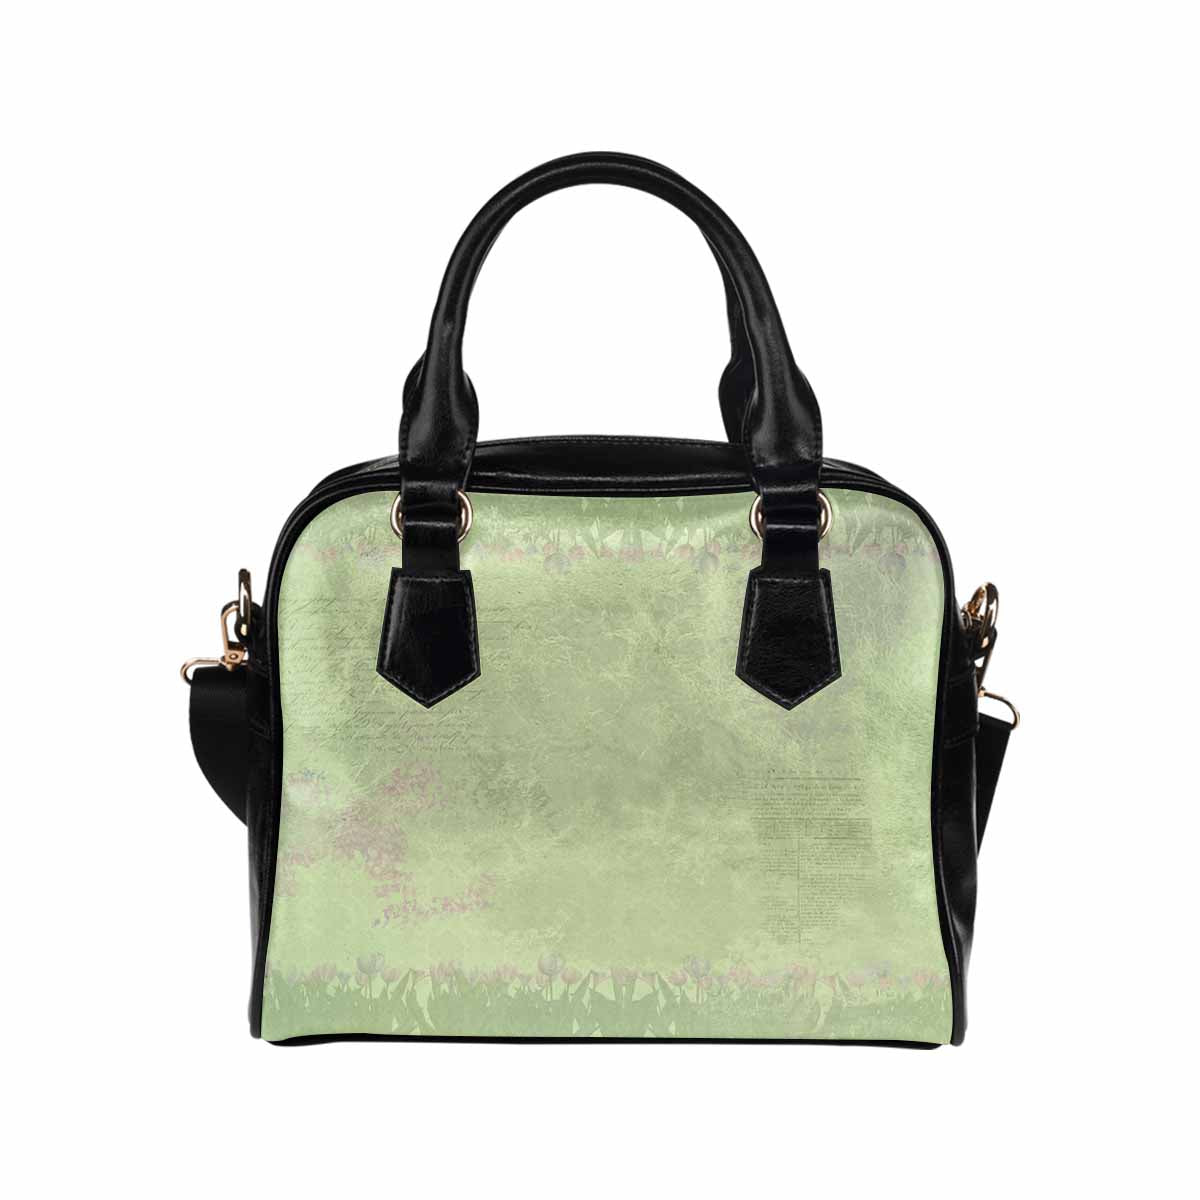 Antique general print handbag, MODEL1695341,Design 56